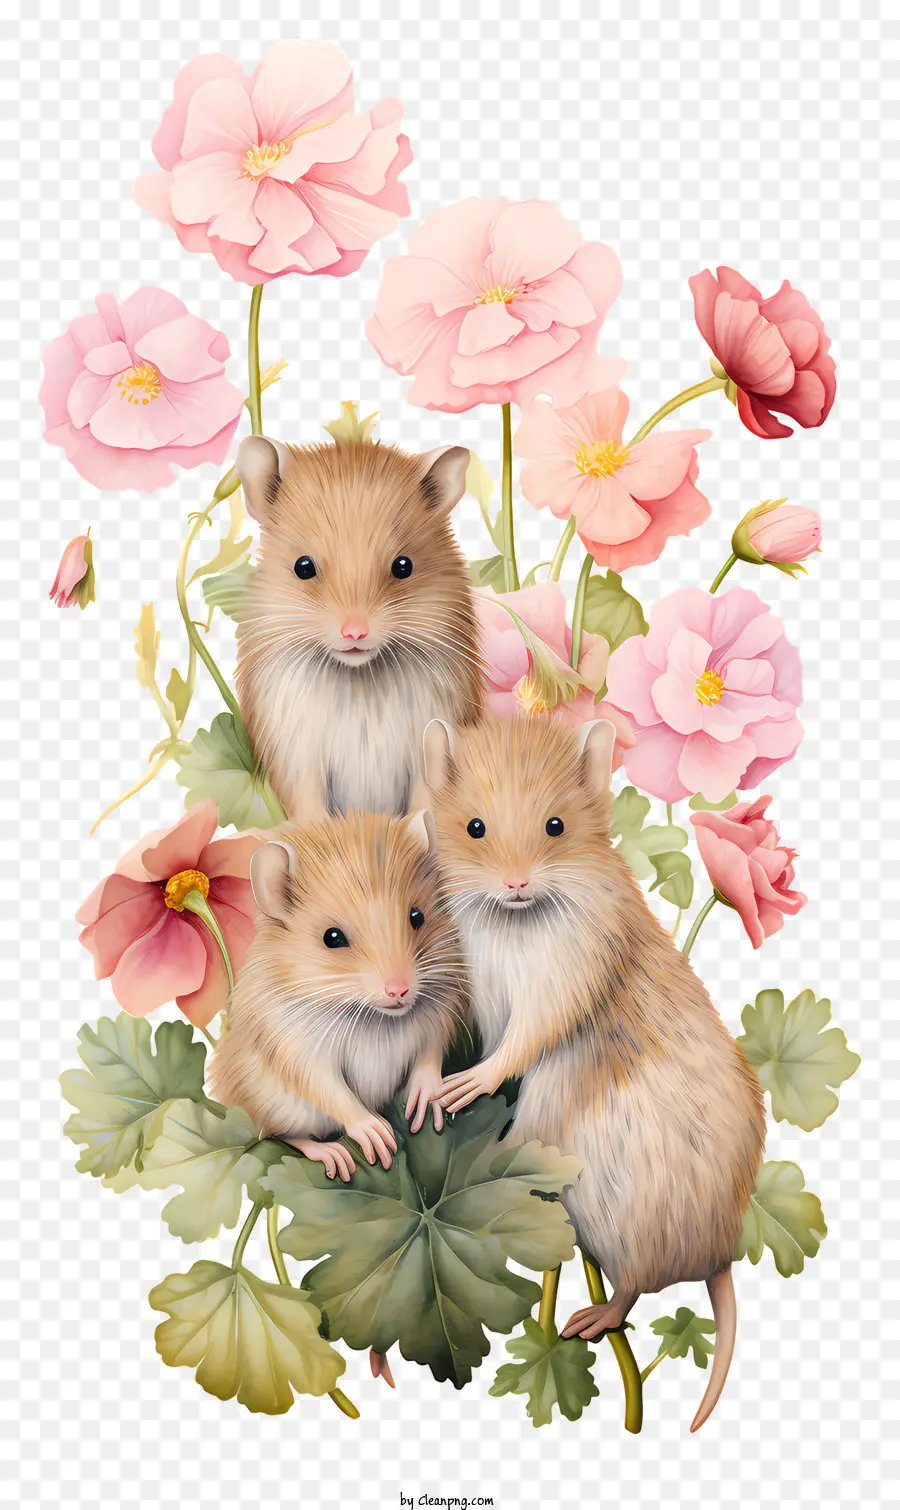 loài động vật nhỏ động vật mịn hoa màu hồng động vật dễ thương những sinh vật hay thay đổi - Ba loài gặm nhấm có hoa màu hồng, ngây thơ